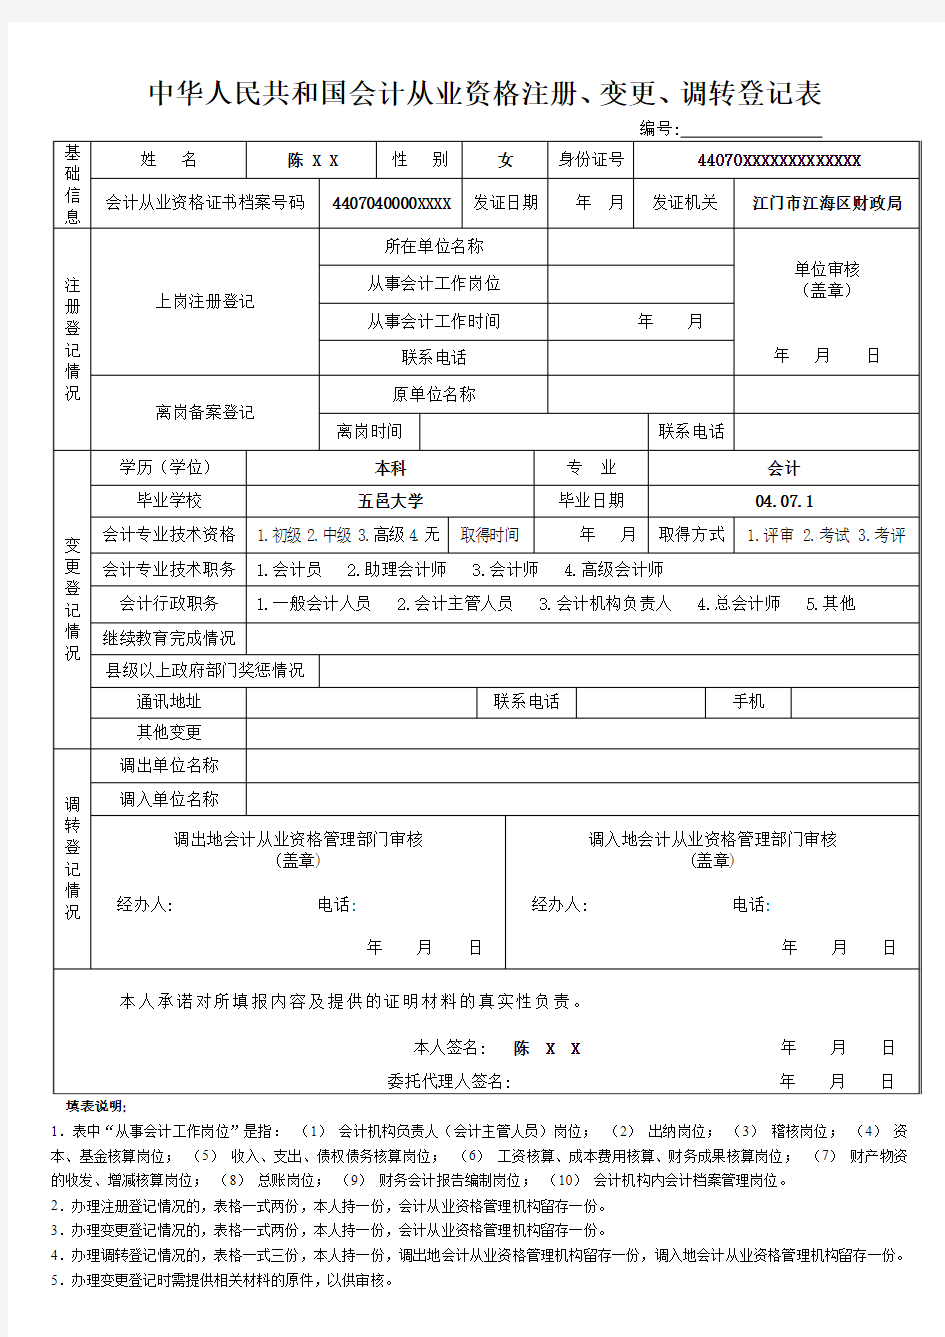 中华人民共和国会计从业资格注册,变更,调转登记表